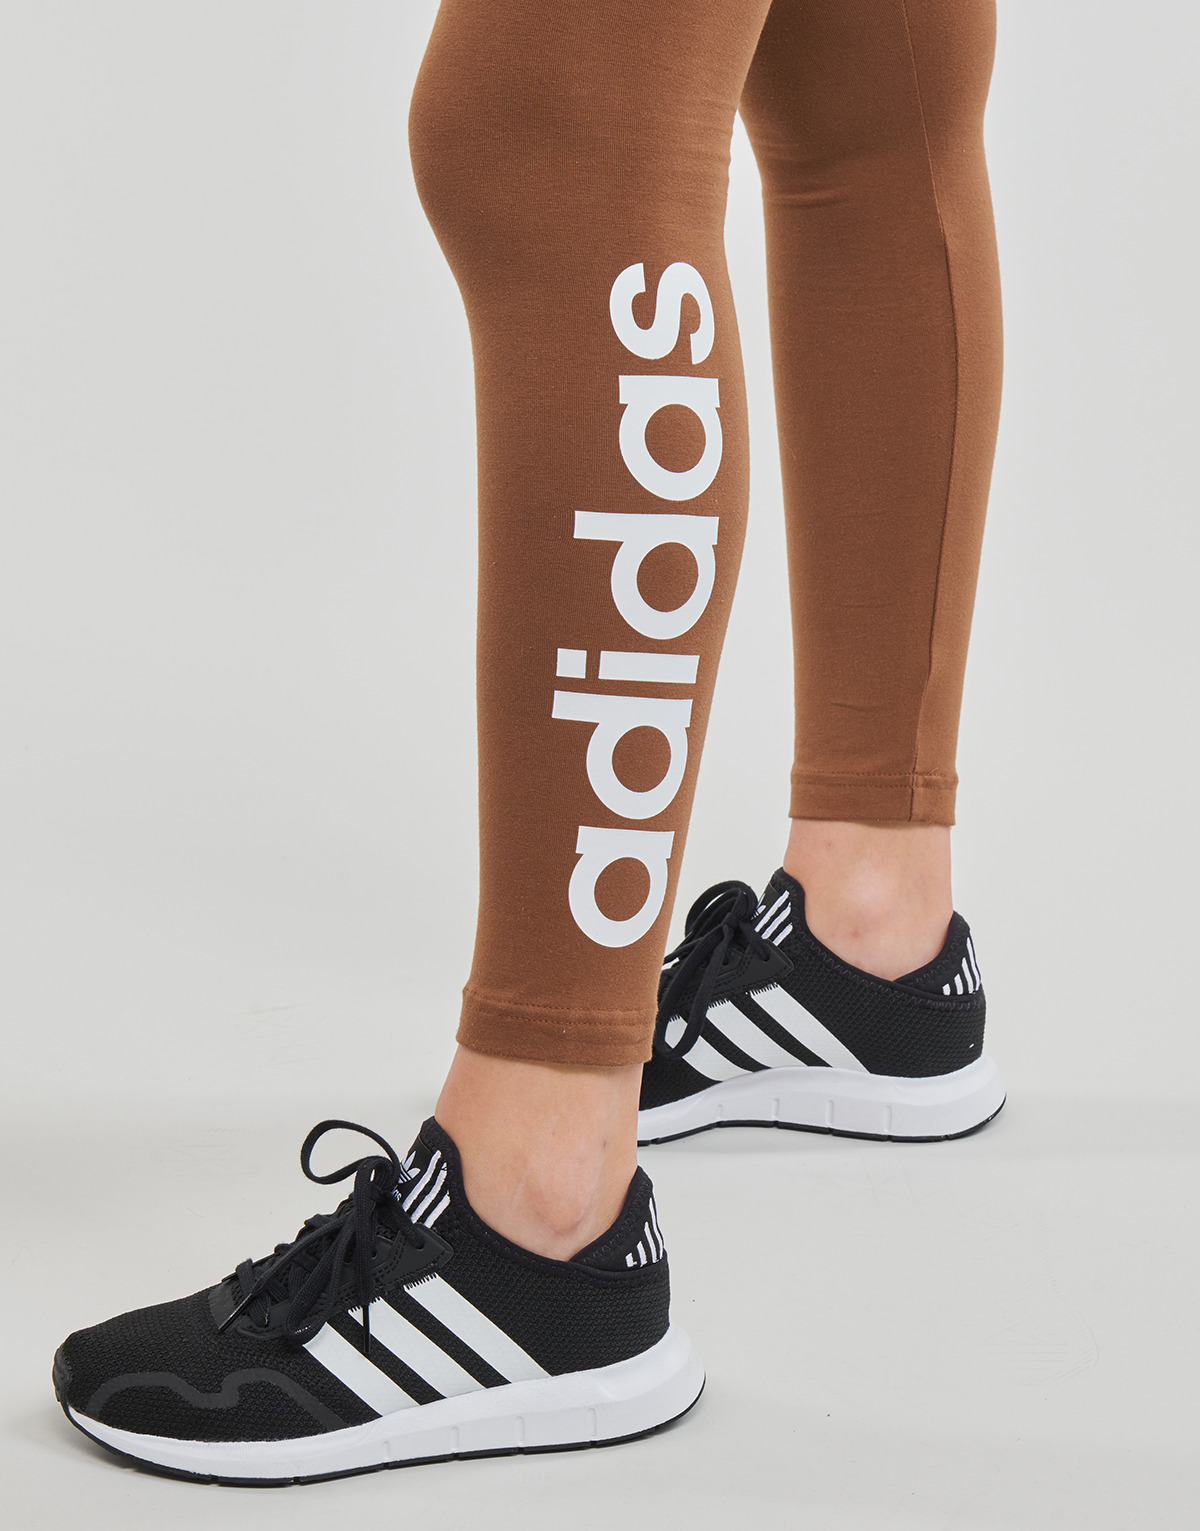 Adidas Sportswear Marron / Blanc LIN LEG vM496o1G